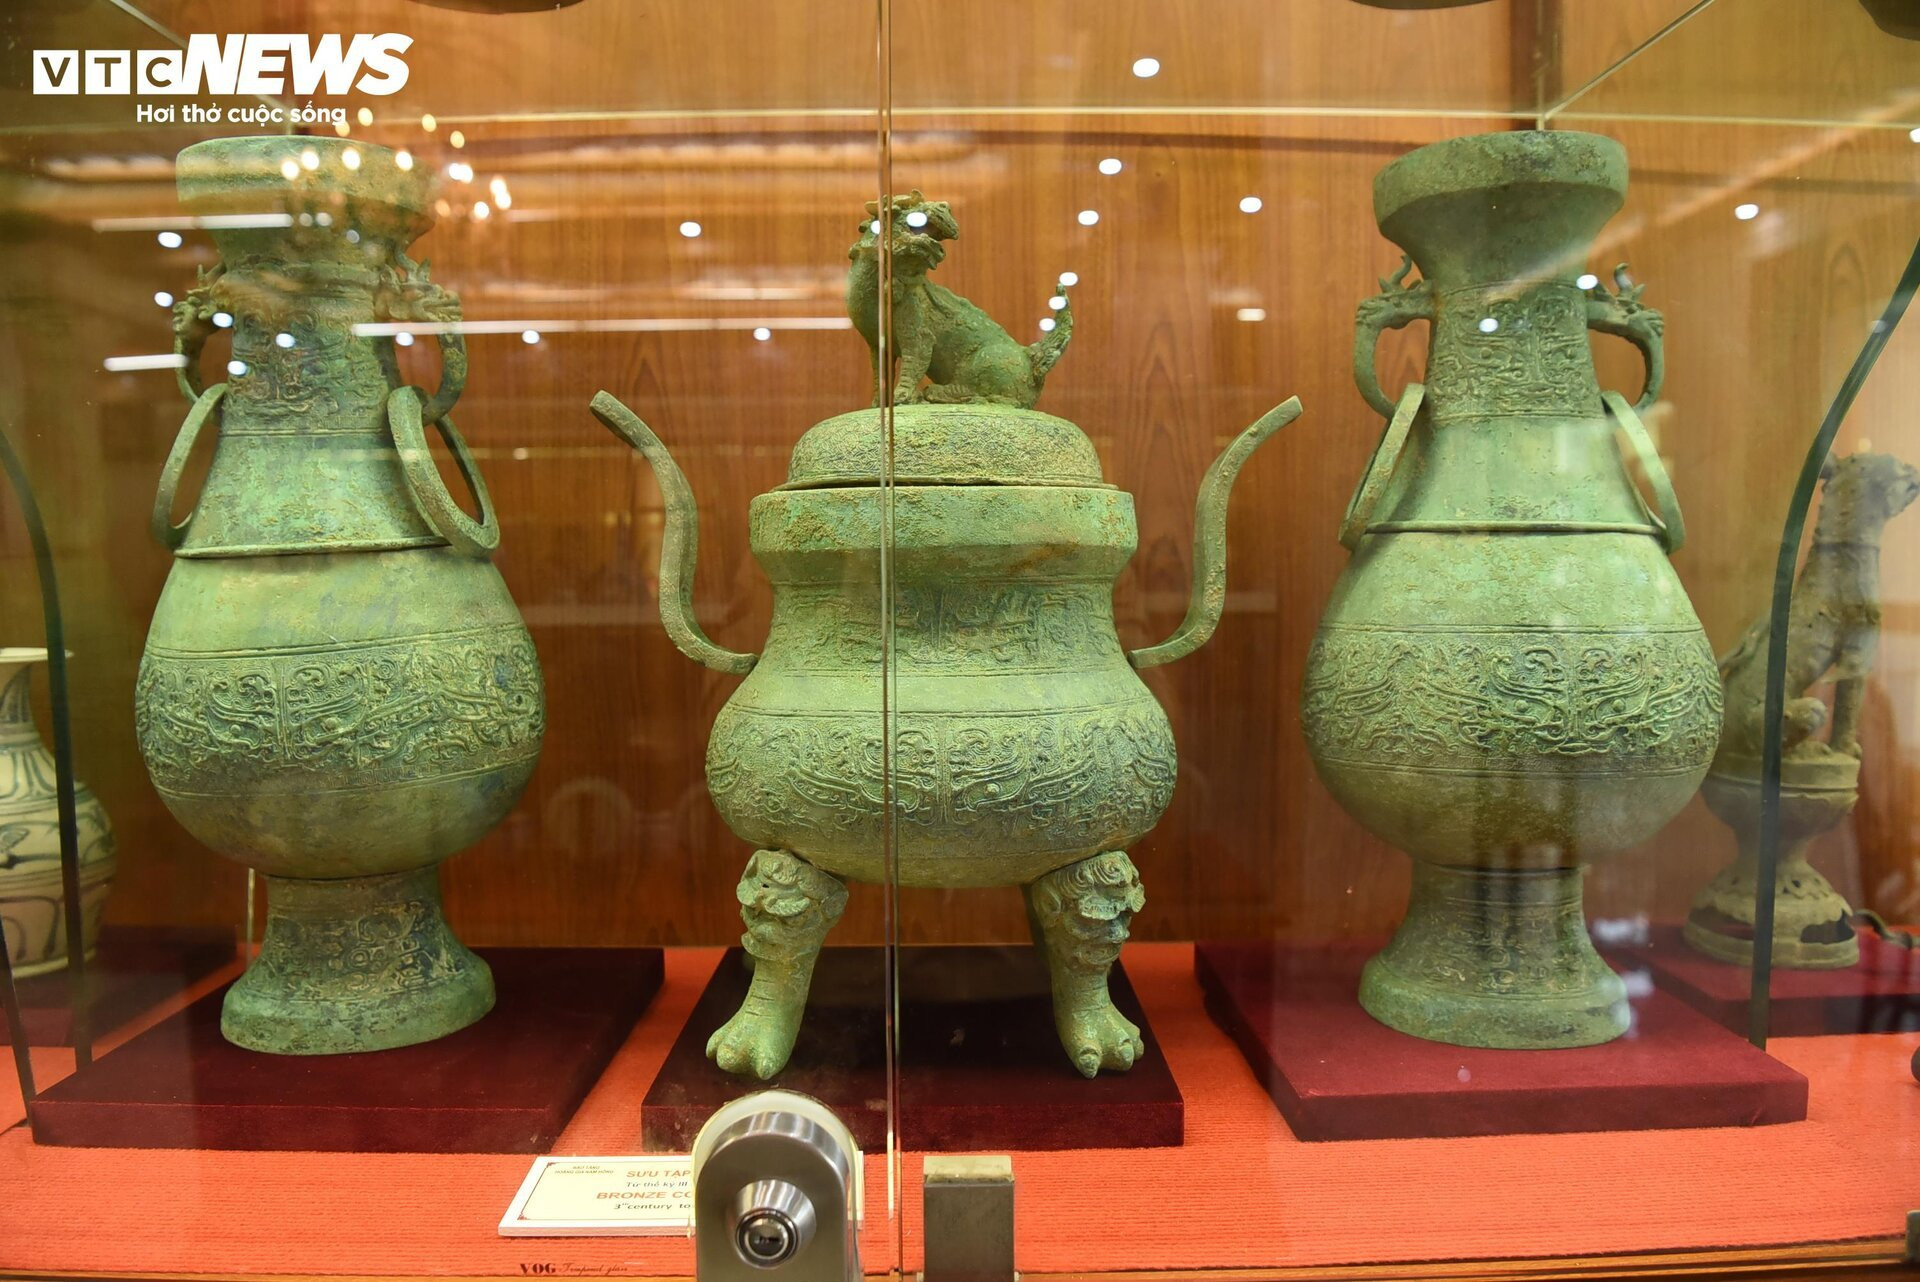 Cận cảnh ấn vàng 'Hoàng đế chi bảo' trưng bày tại bảo tàng tư nhân ở Bắc Ninh - 16